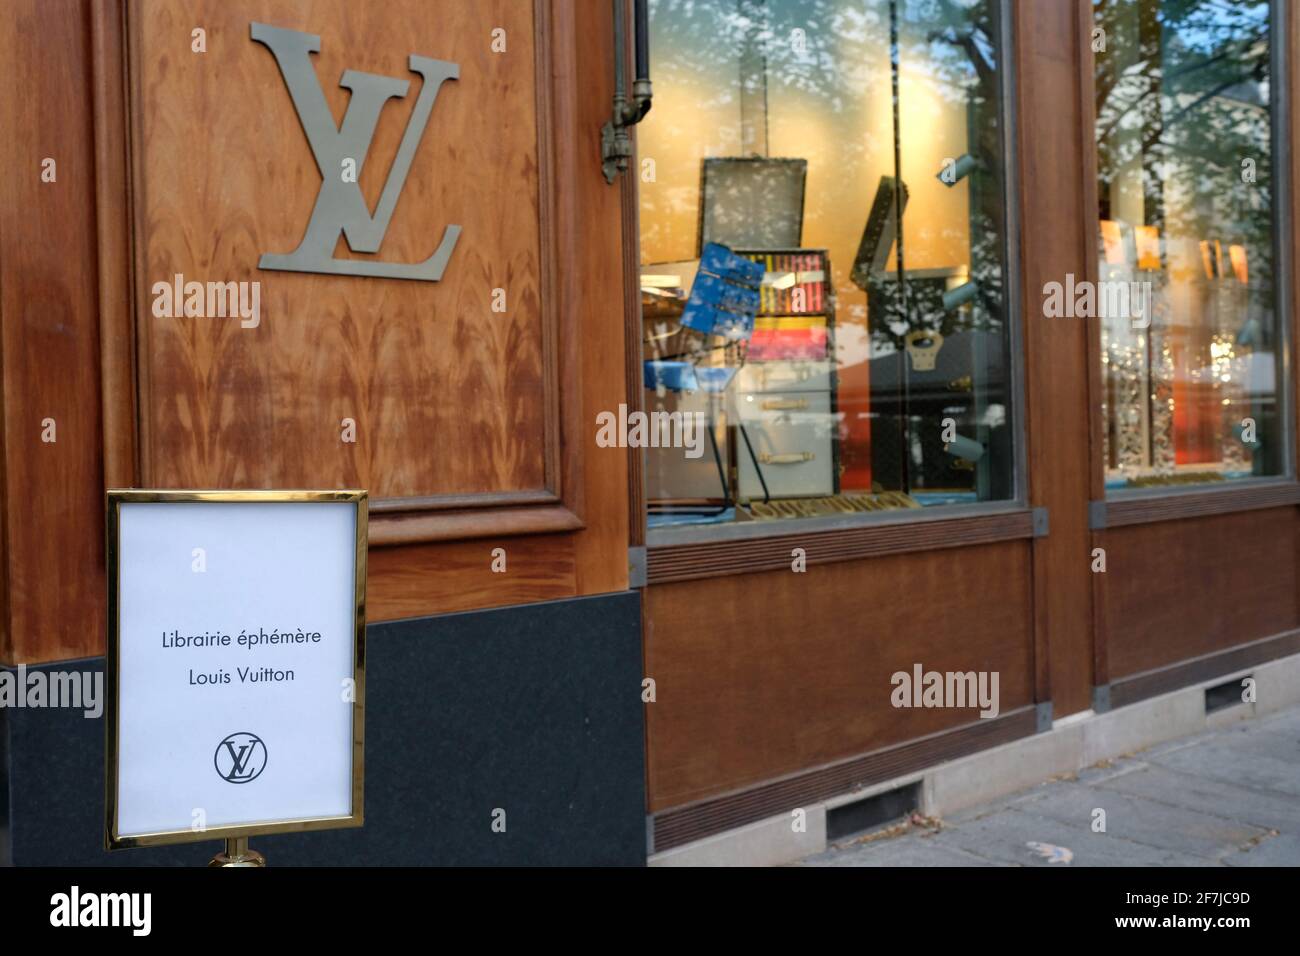 Louis Vuitton opens a bookstore in its Saint-Germain-des-Prés